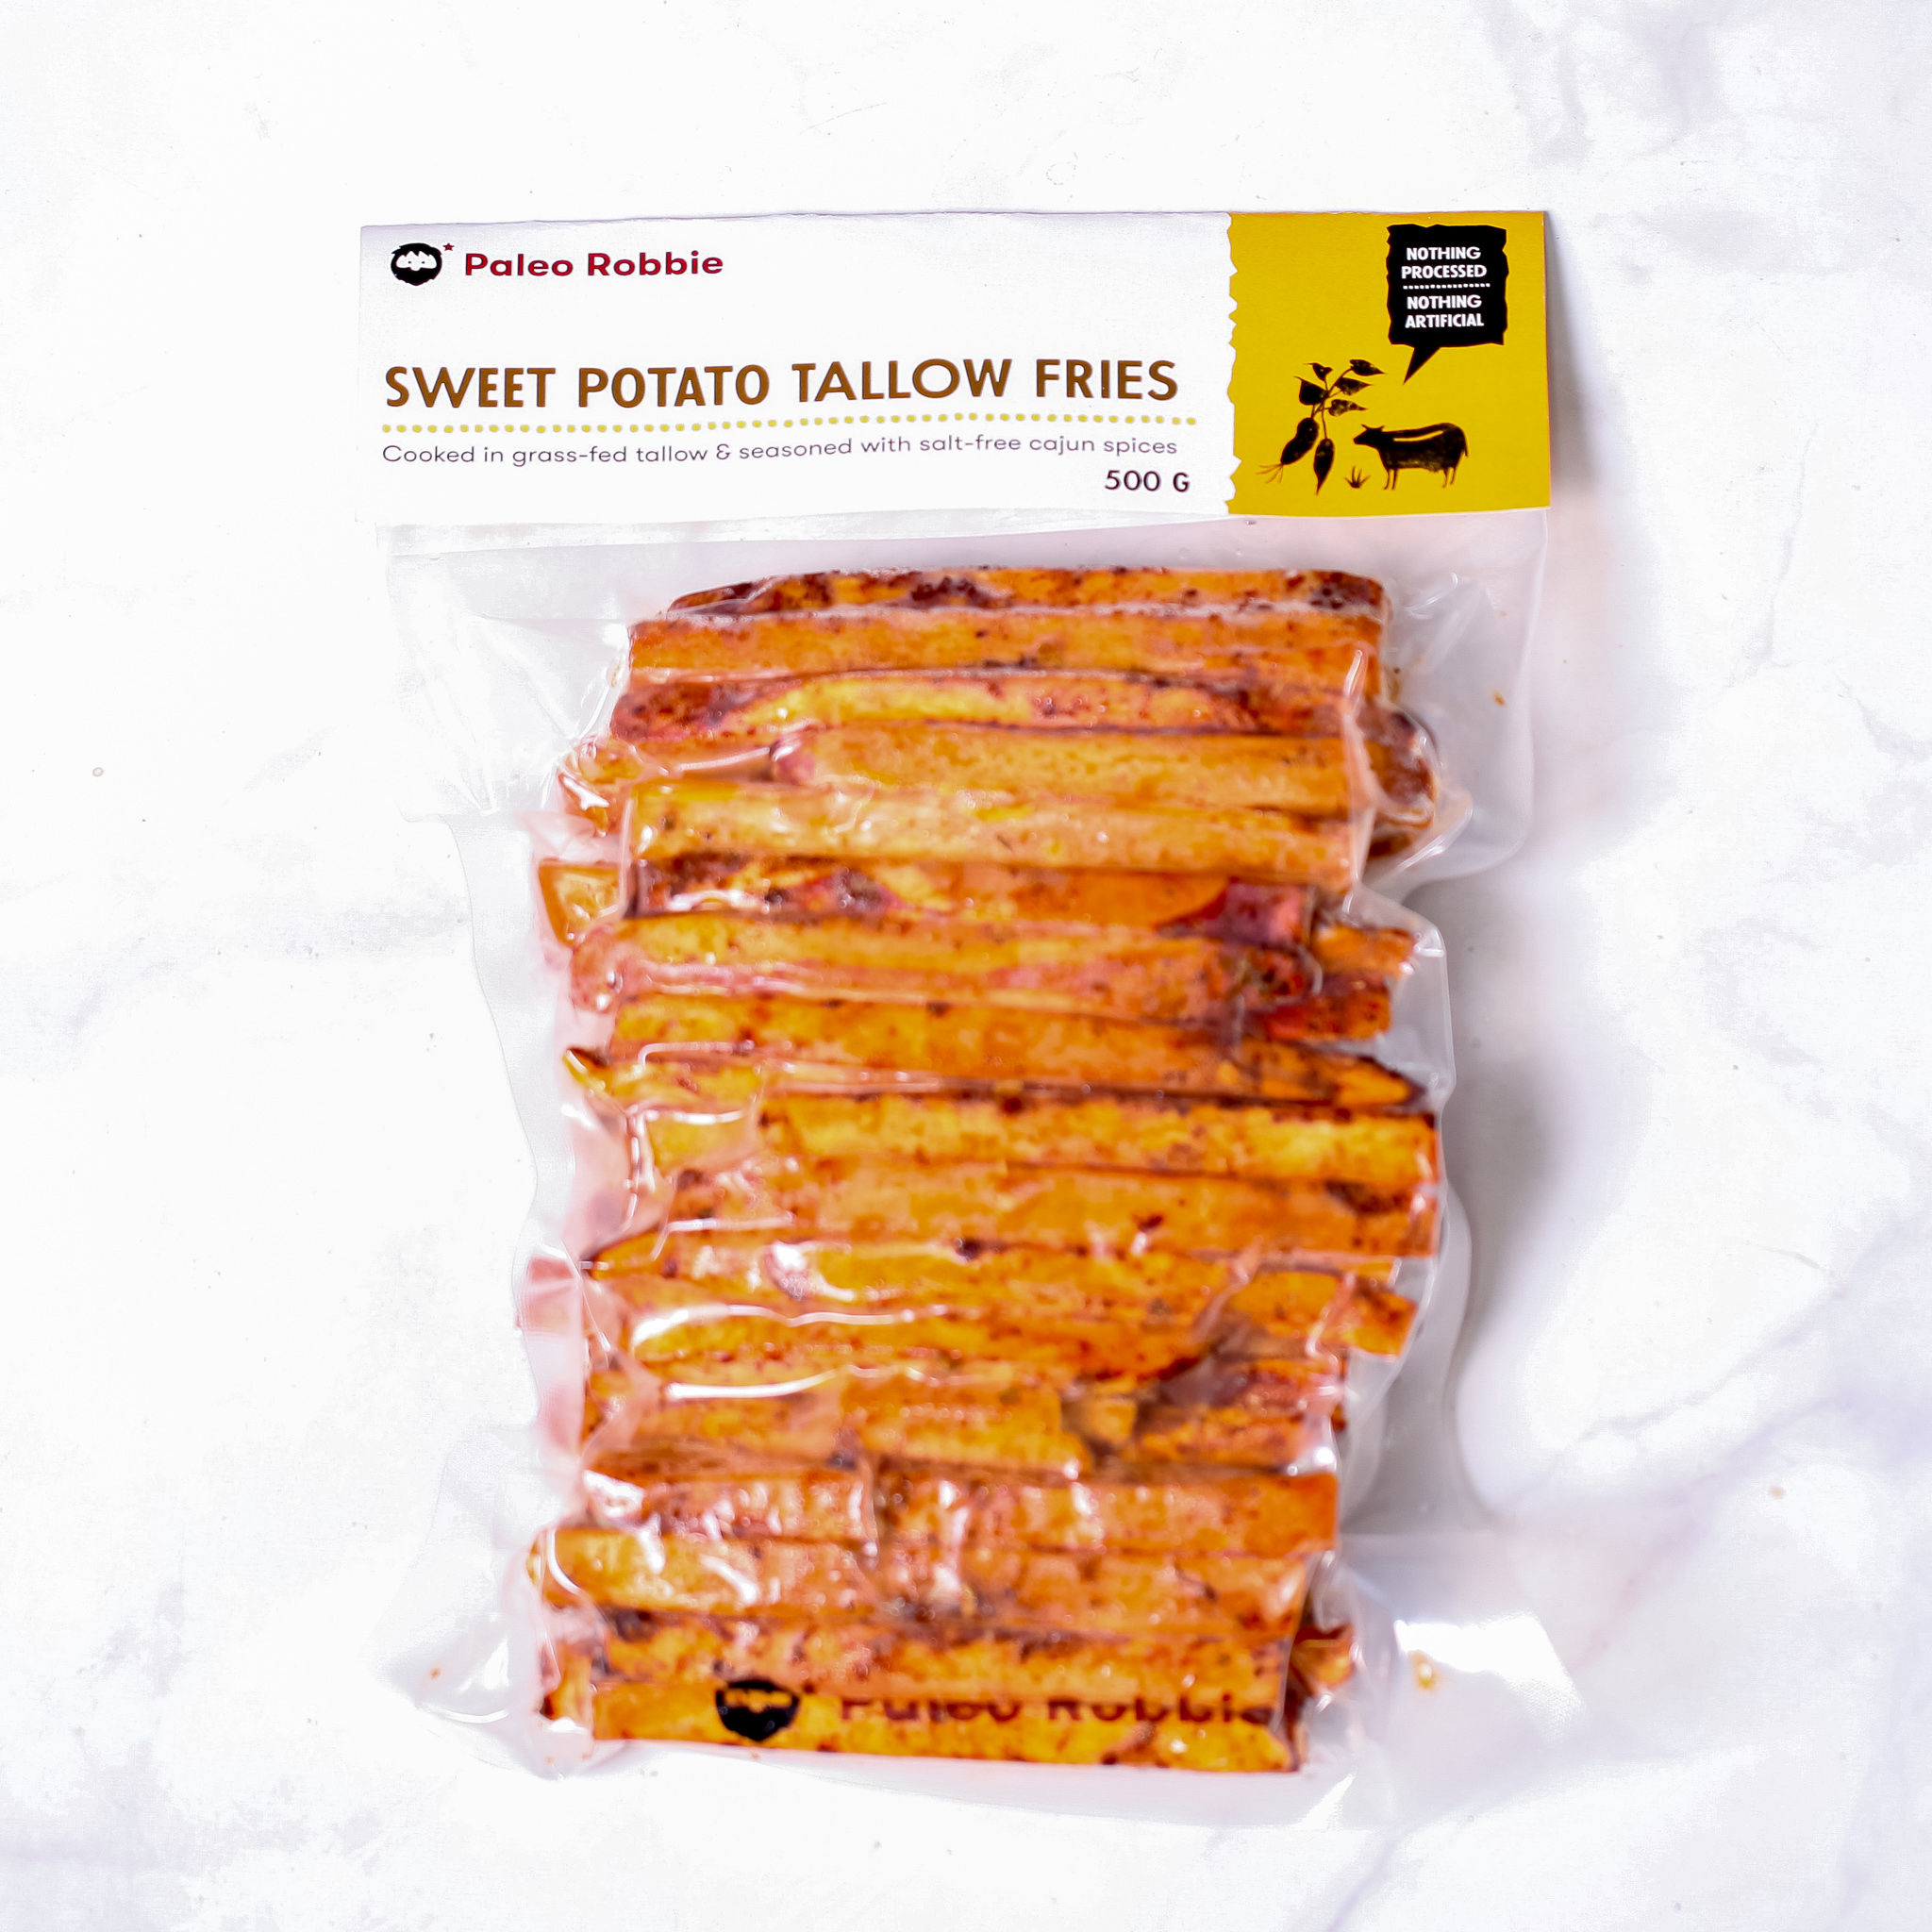 Sweet Potato Tallow Fries